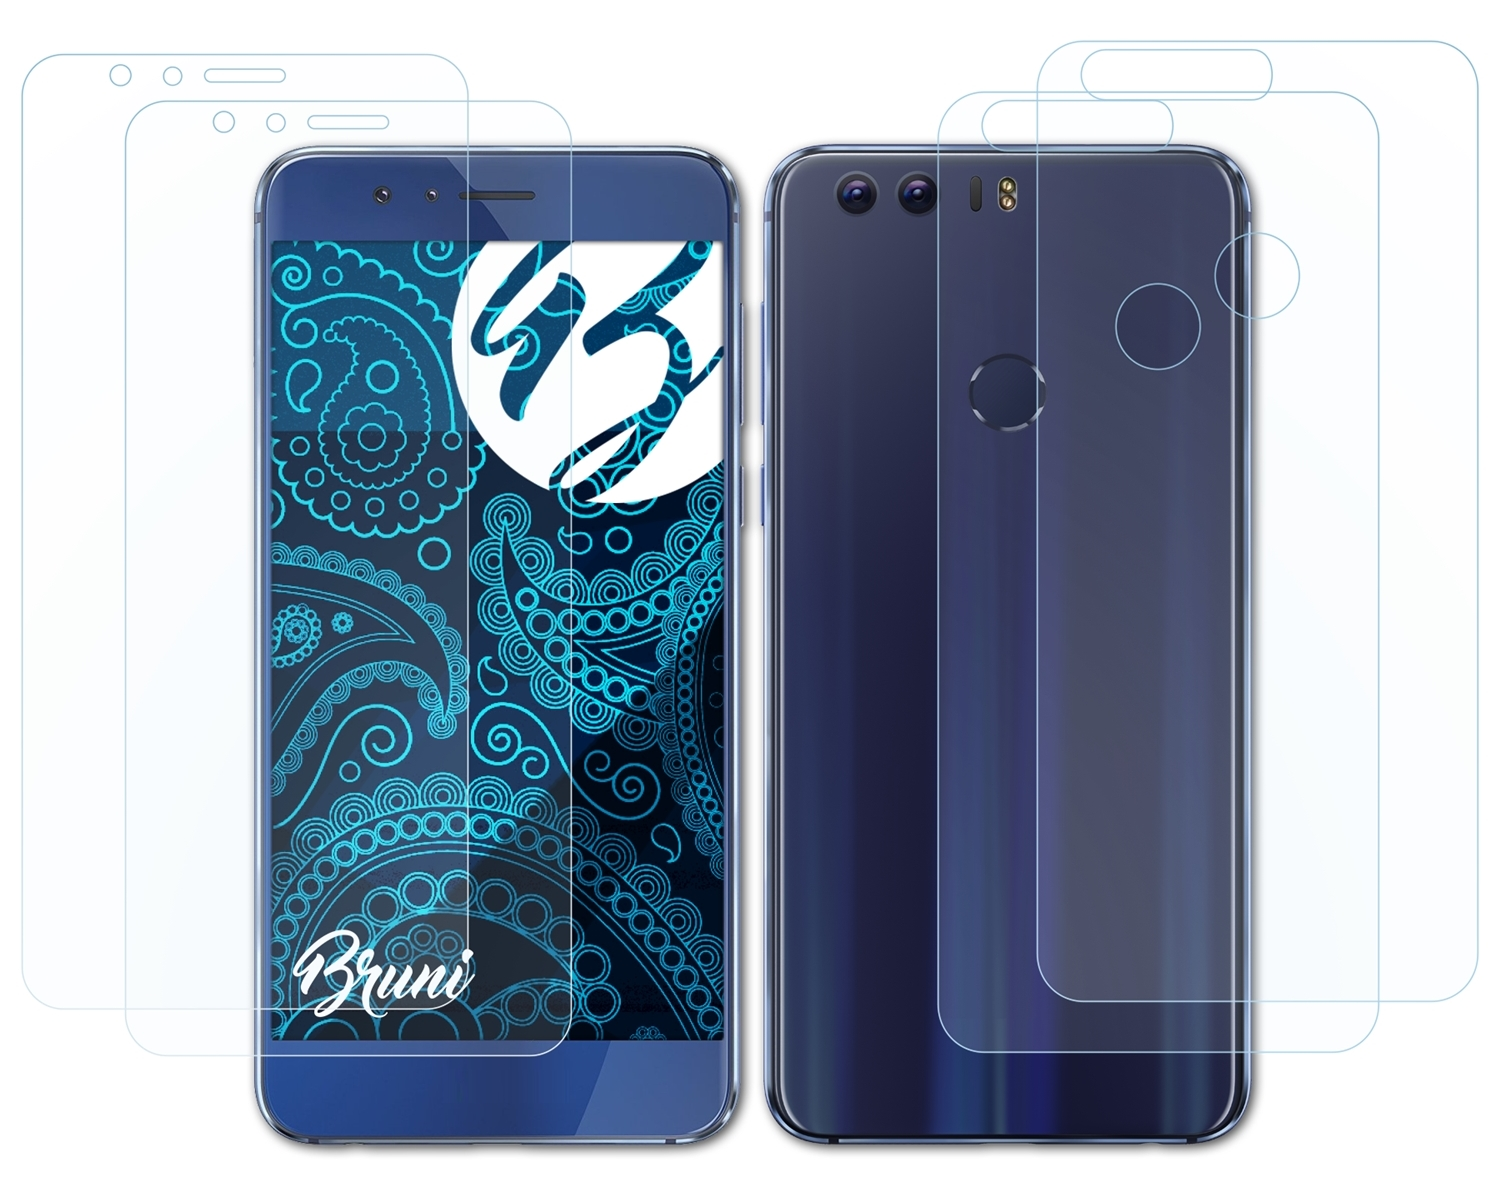 BRUNI Honor 8) Basics-Clear Huawei 2x Schutzfolie(für